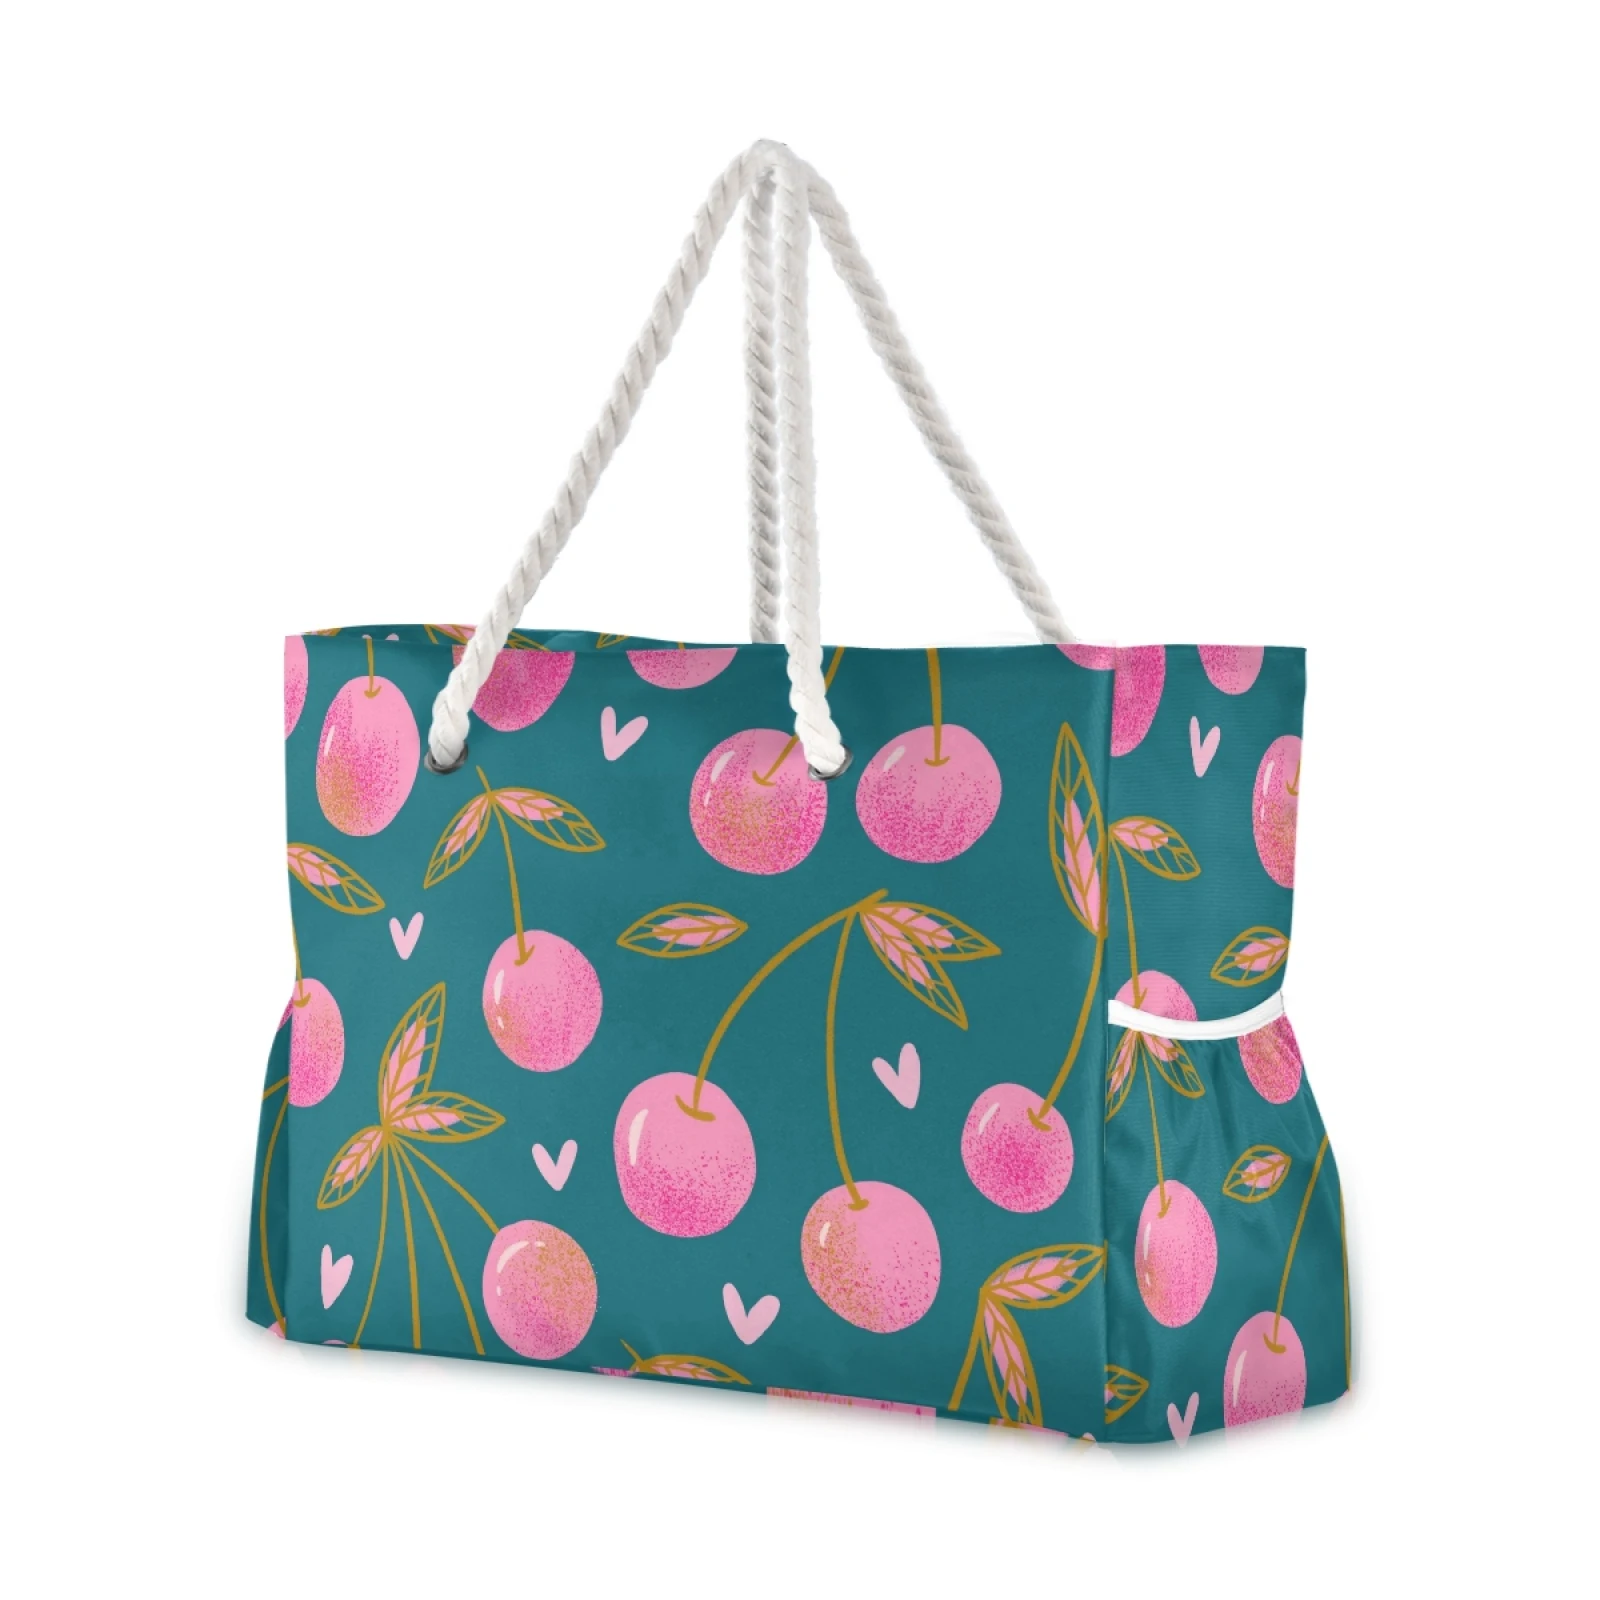 Bacche di ciliegio rosso dolce strappo sulla borsa della spesa verde borsa a tracolla da donna borsa Shopping pieghevole borsa da spiaggia in Nylon di moda